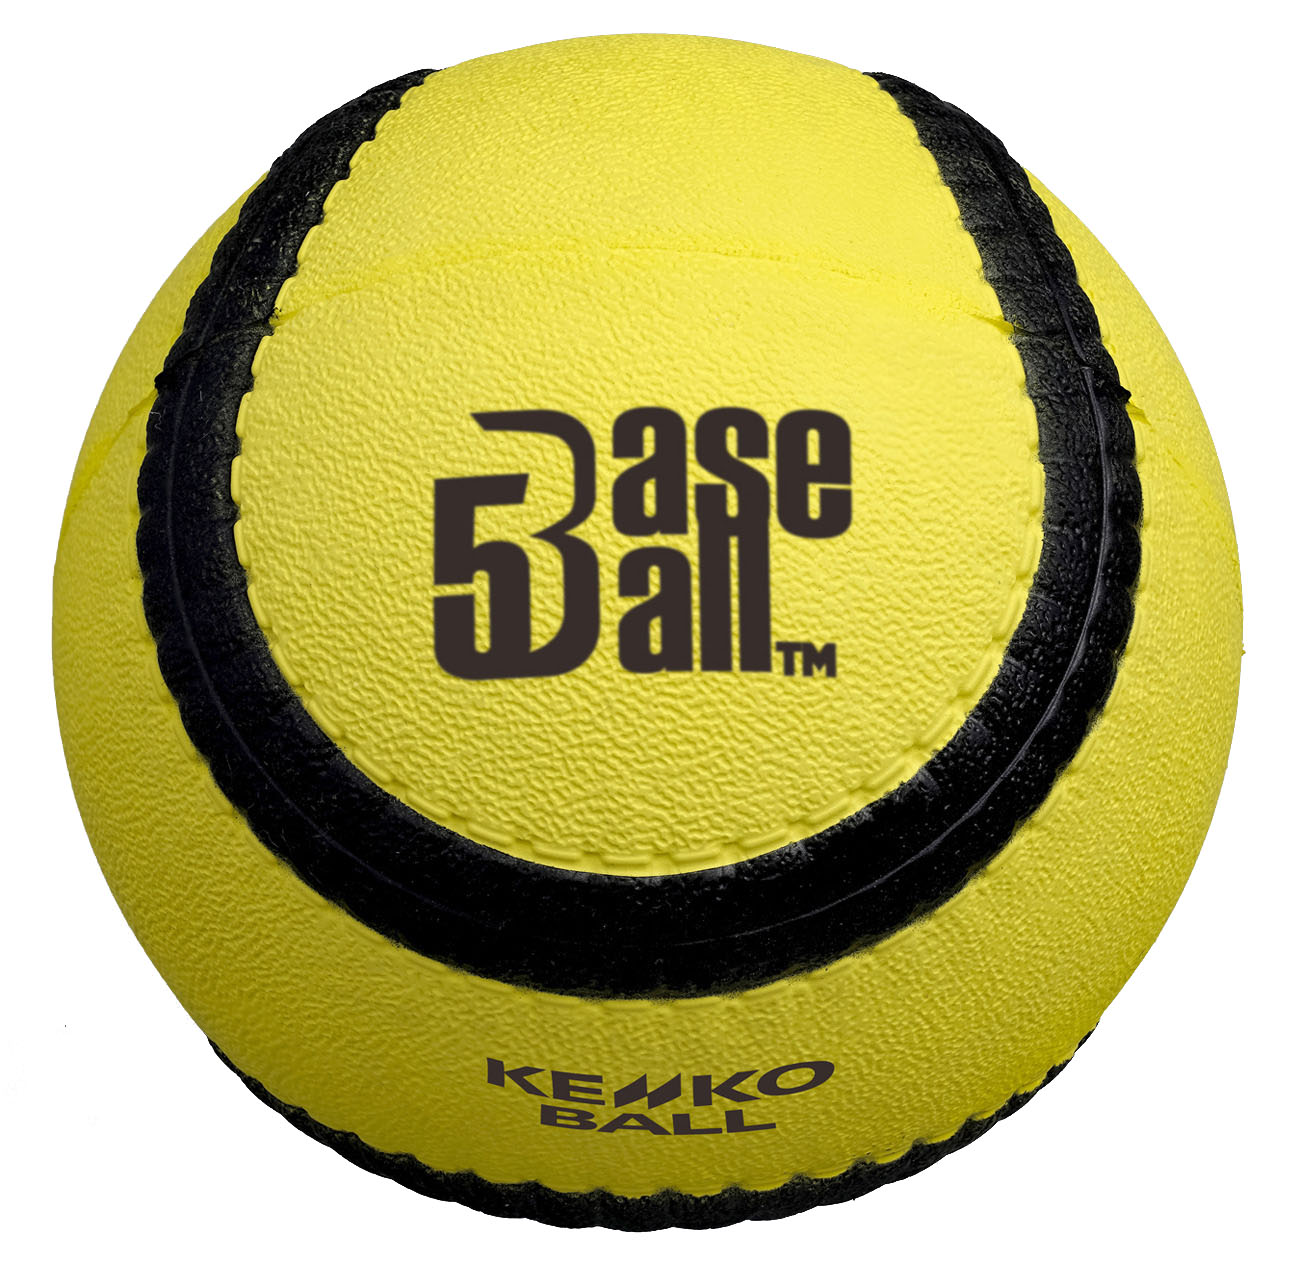 Bende tentoonstelling Injectie Kenko nieuwe Baseball5 partner van de KNBSB: 'Het is een sport met kansen'  | KNBSB